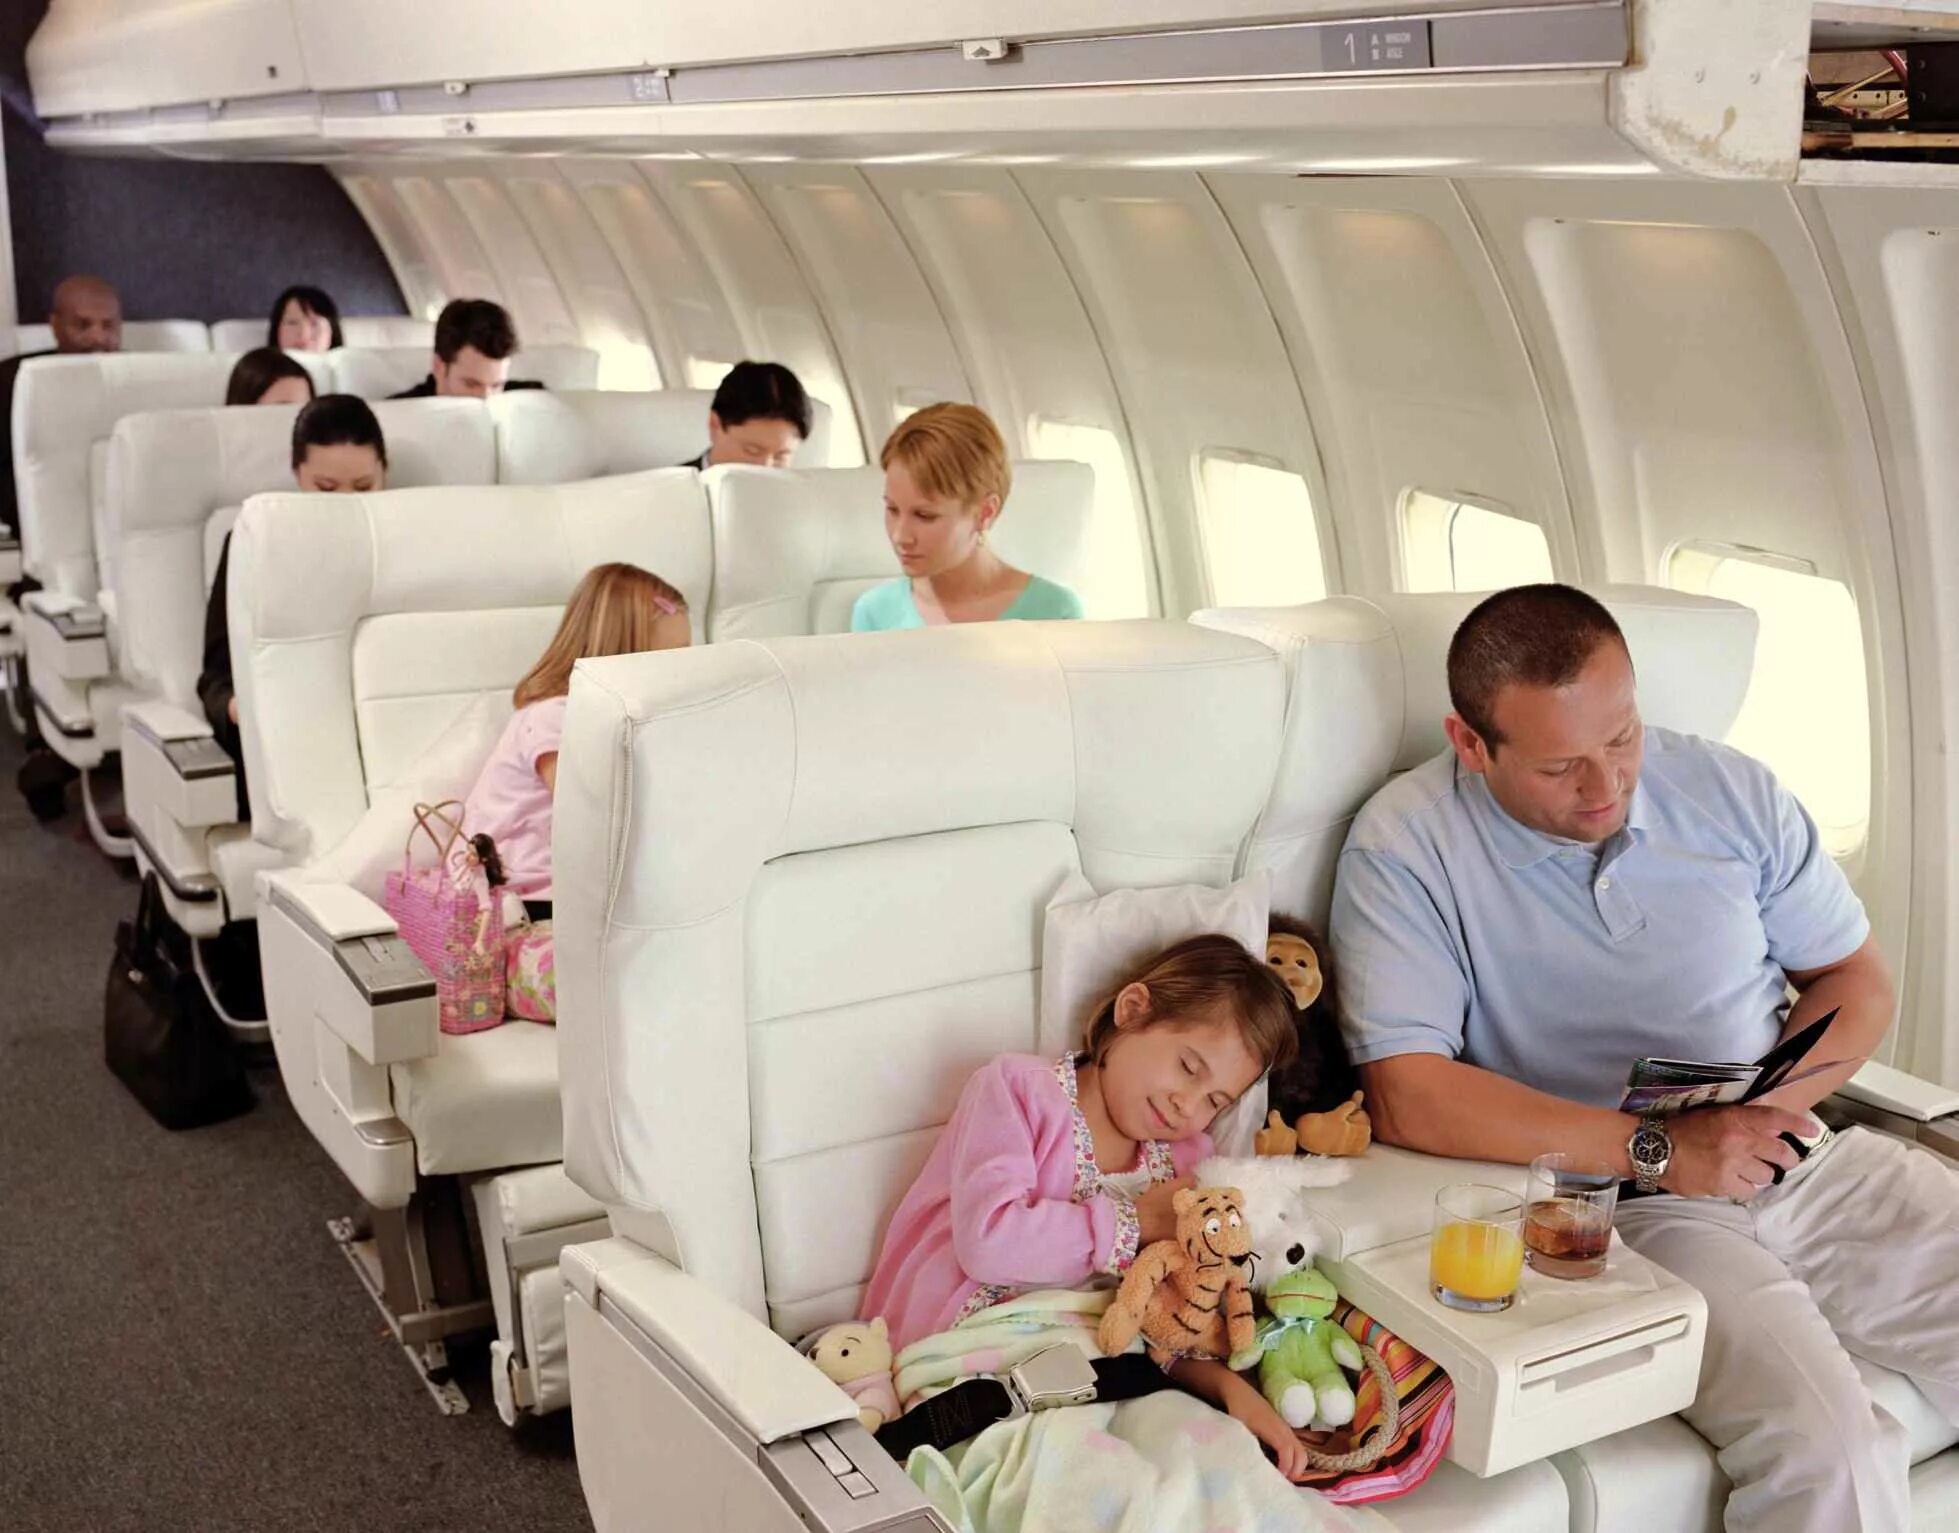 Игрушки можно в самолет. Самолет для детей. Путешествие на самолете. Места в самолете для младенцев. Места для детей в самолете.